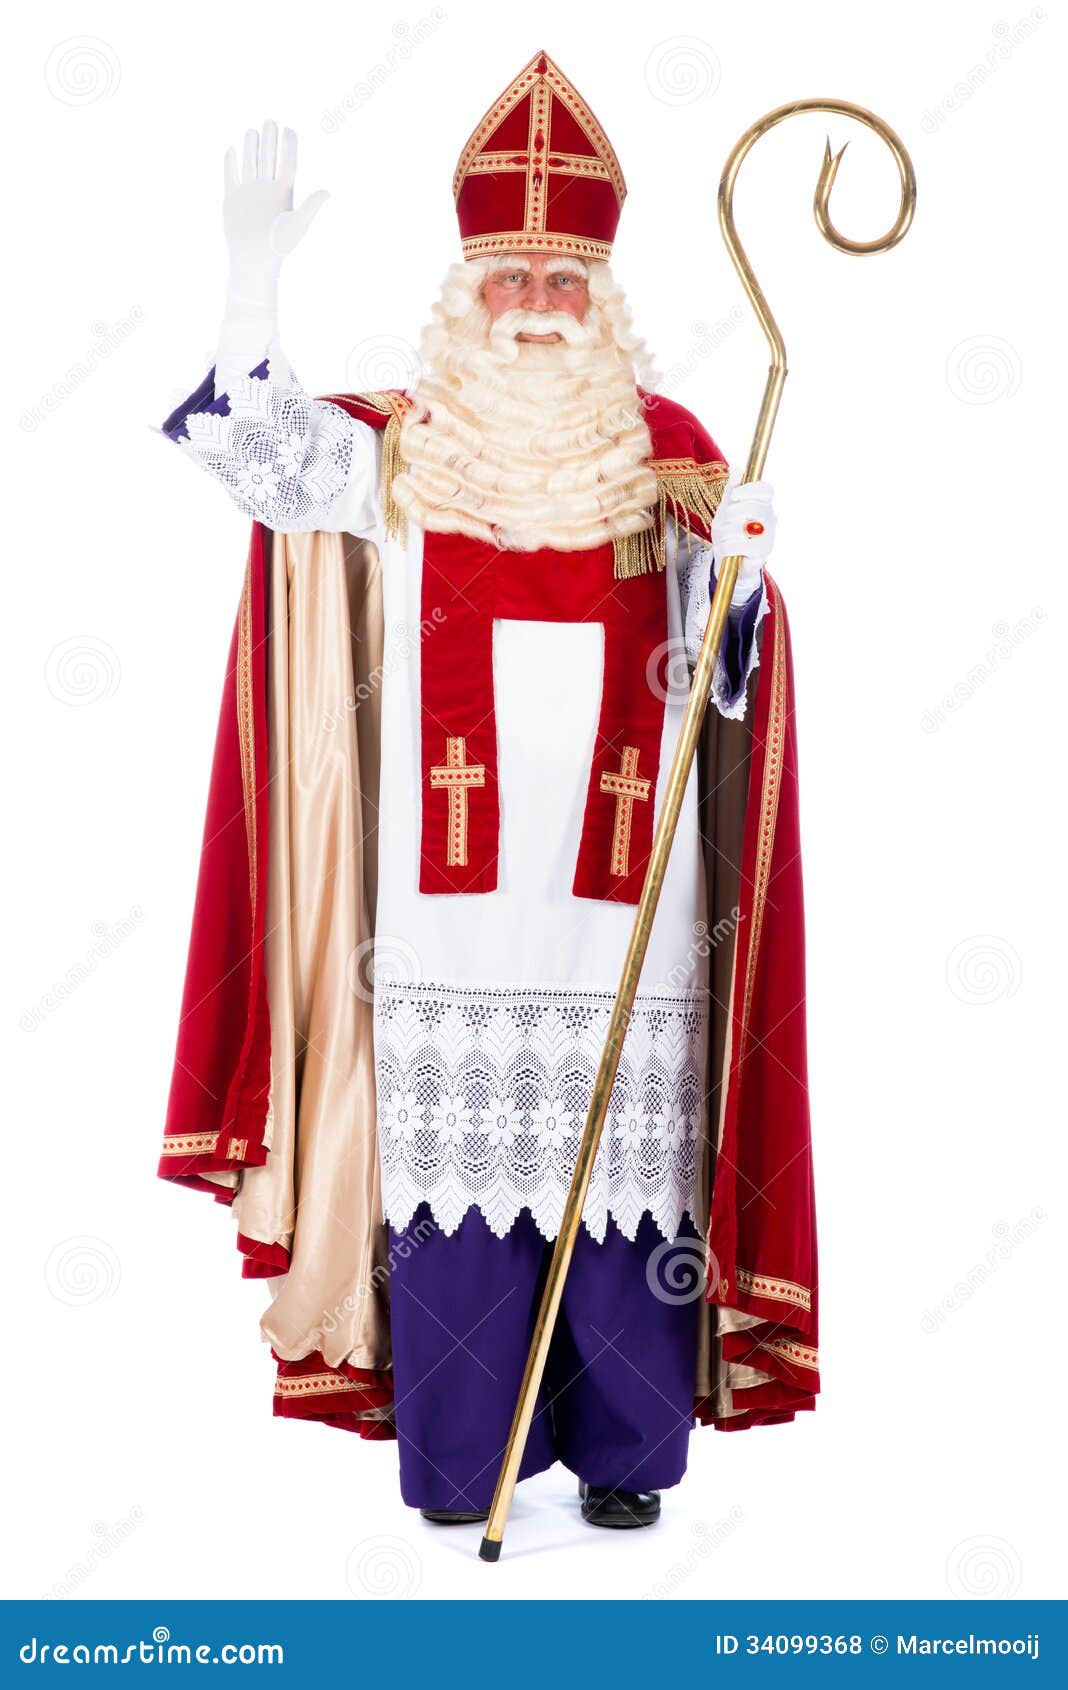 Aankoop Betrokken Houden Portrait of Sinterklaas stock photo. Image of celebrate - 34099368